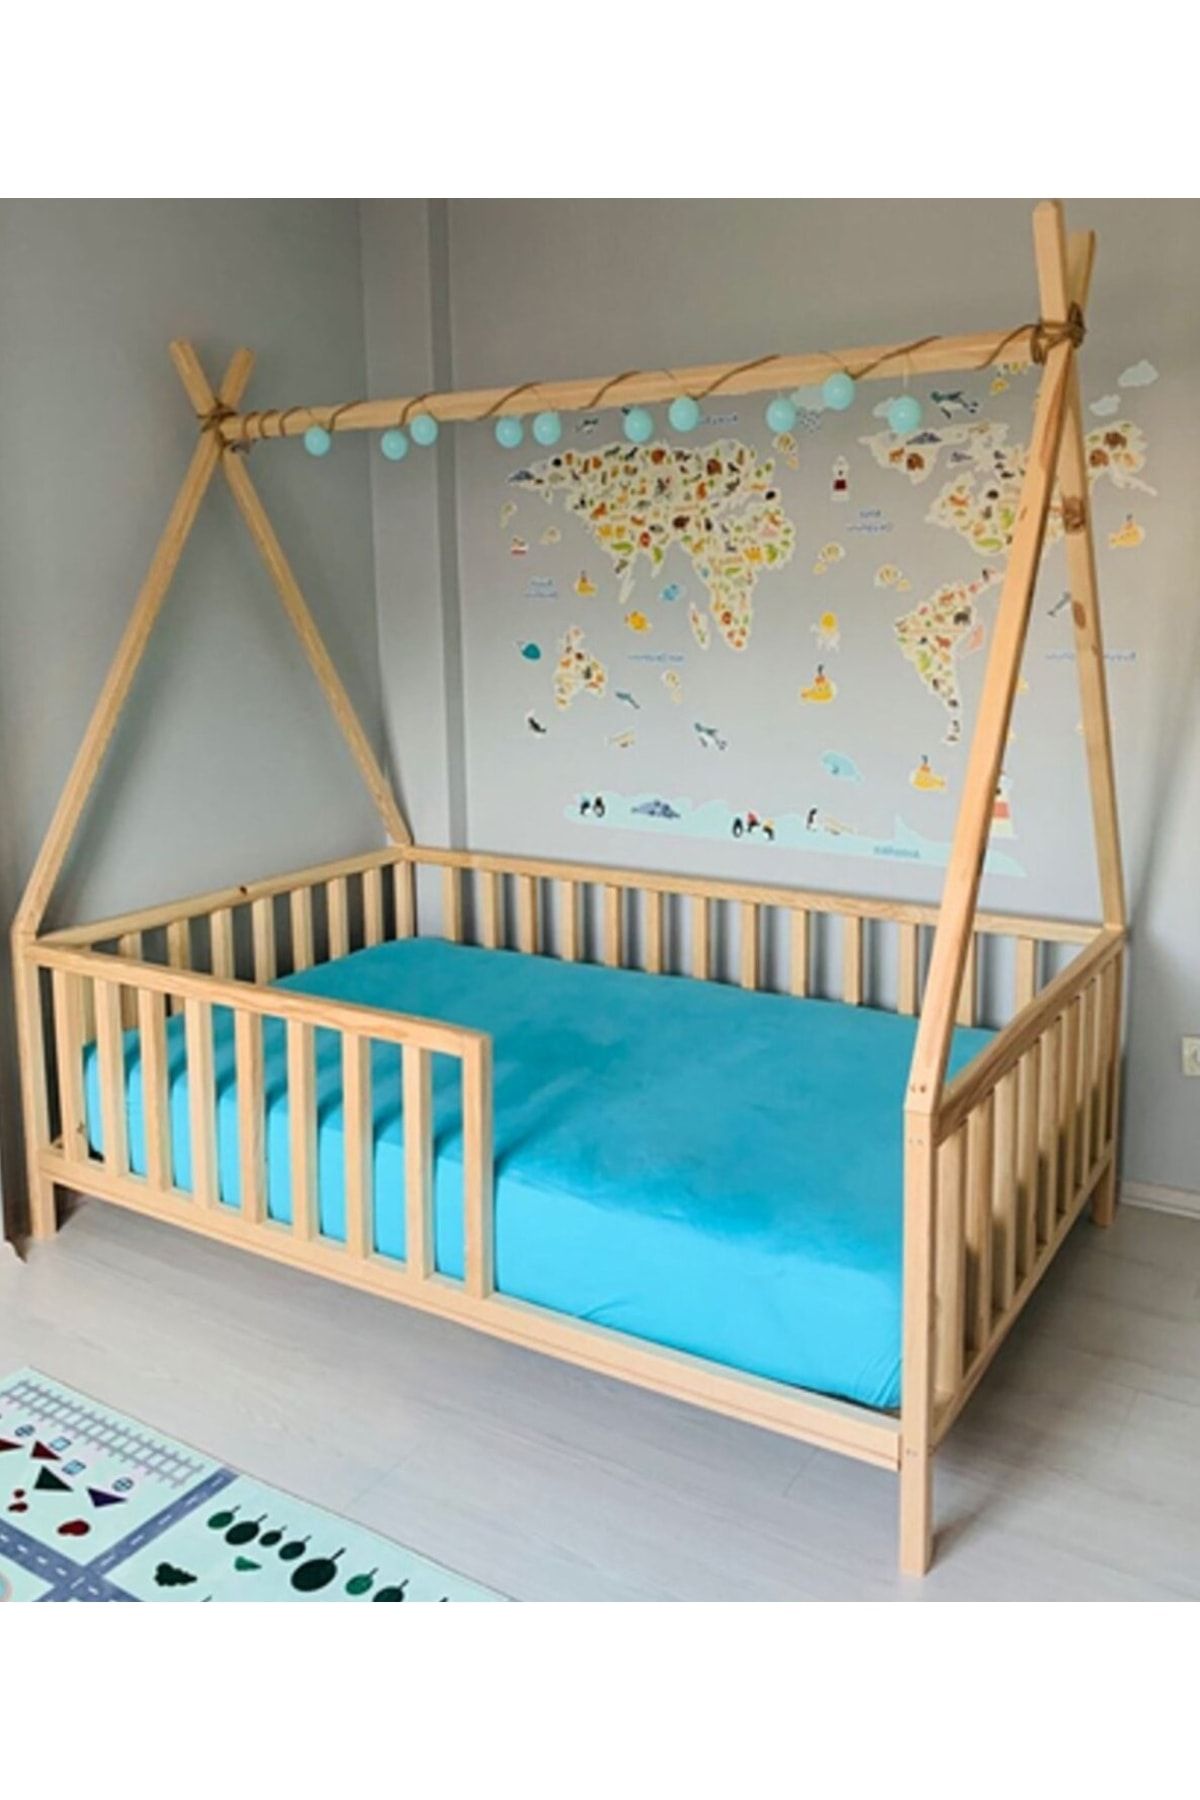 HFT HOME Özgök Tarım Montessori Bebek Ve Çocuk Karyolası Unisex Doğal Ahşap Yatak